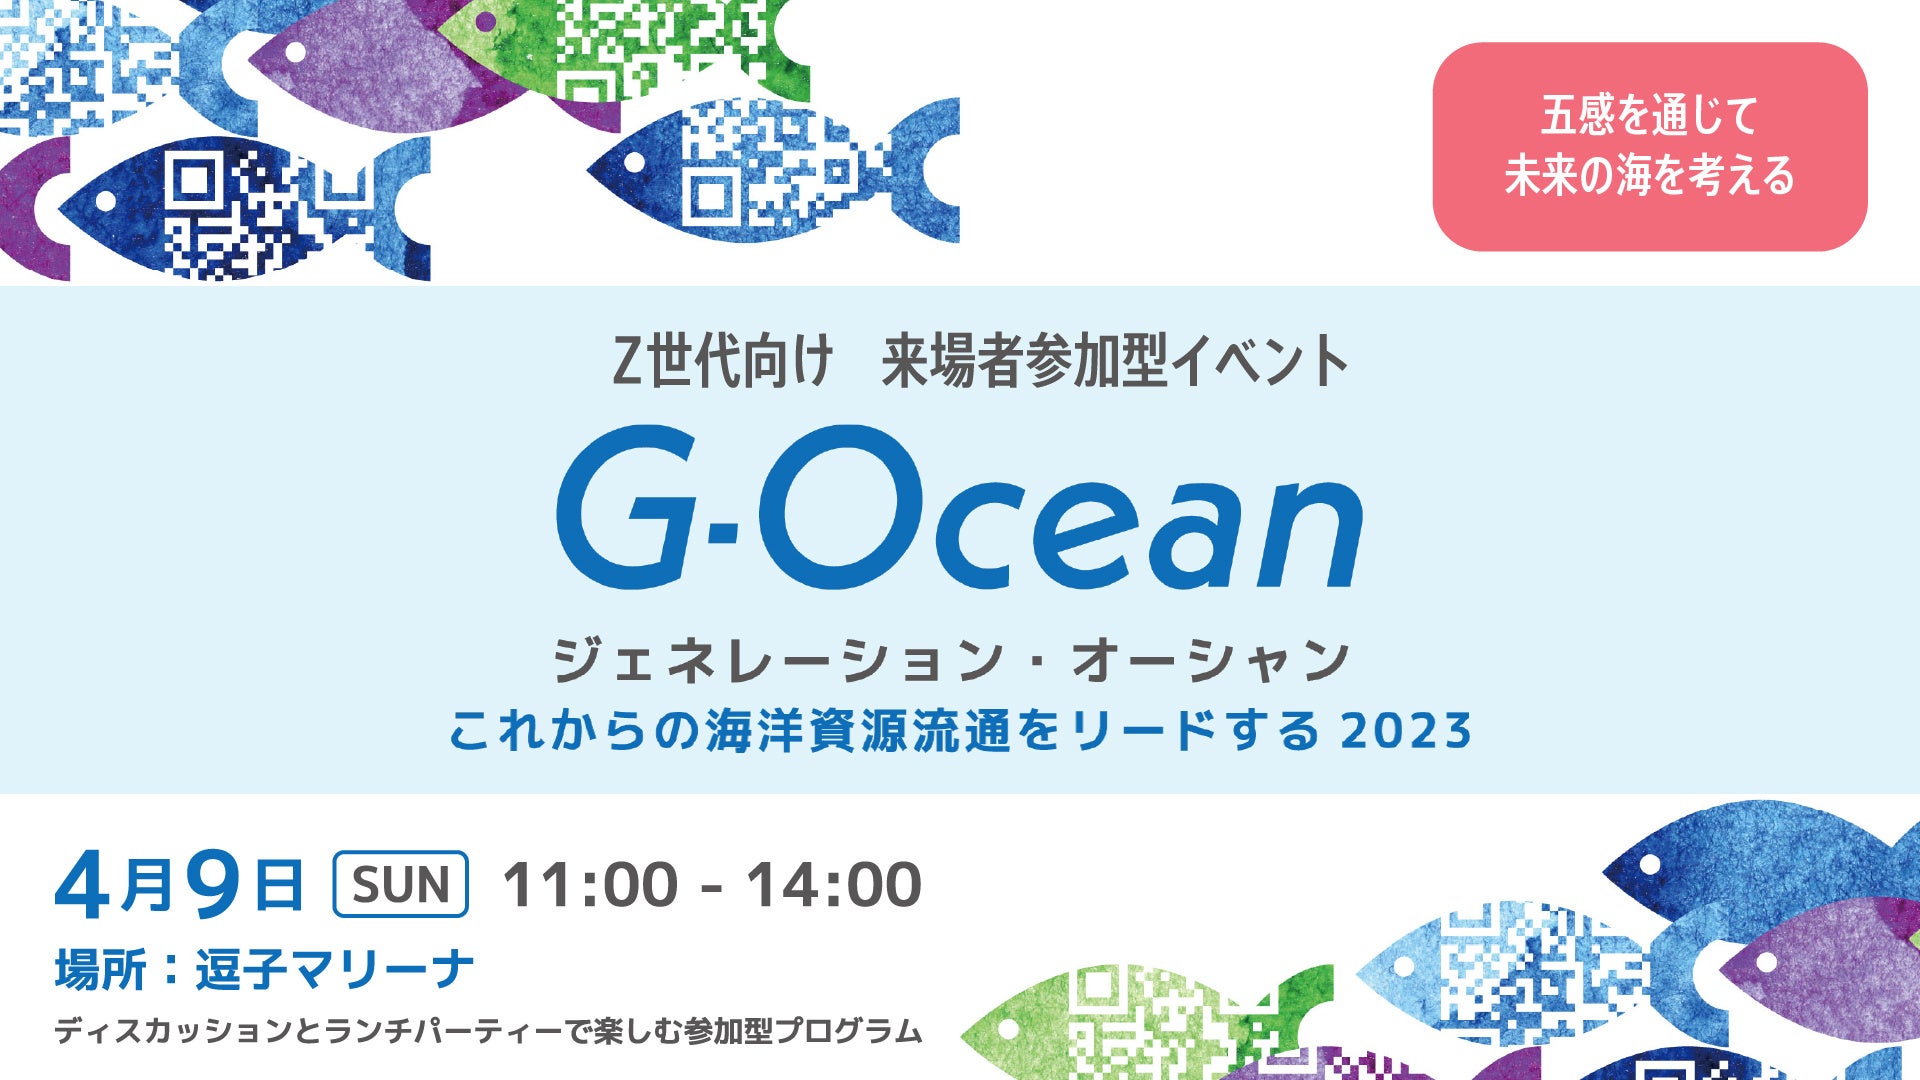 4月9日(日)Z世代と「海のトレーサビリティ」を学び、味わうイベント『G-Ocean(ジェネレーション・オーシャン)』を逗子で開催。